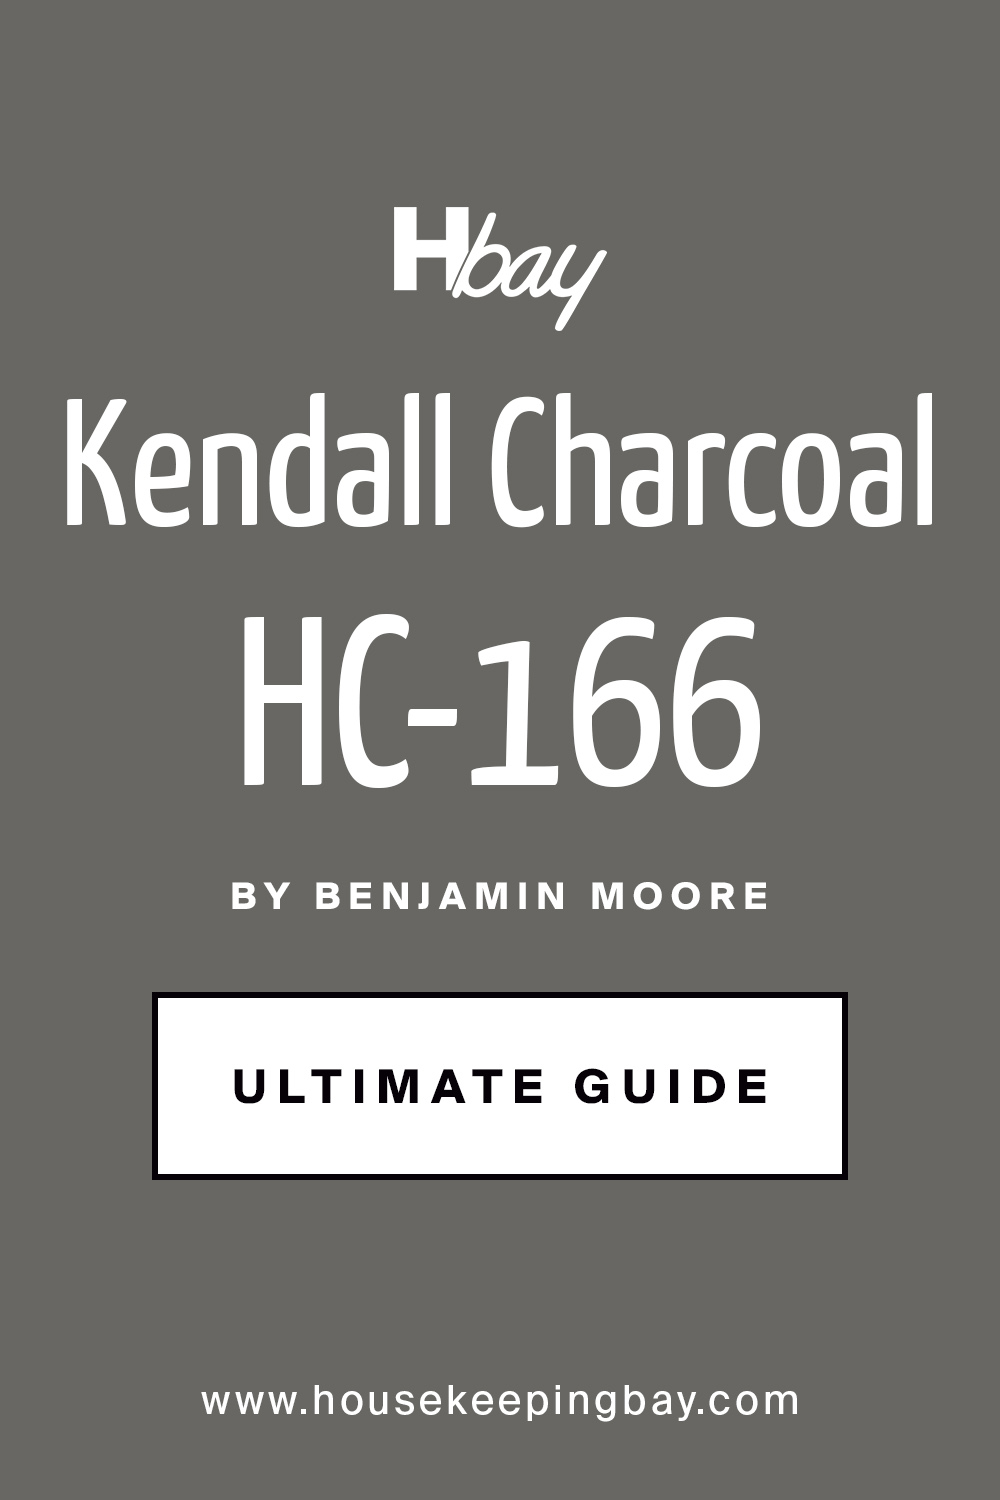 Kendall Charcoal HC-166 Benjamin Moore Ultimate Guide